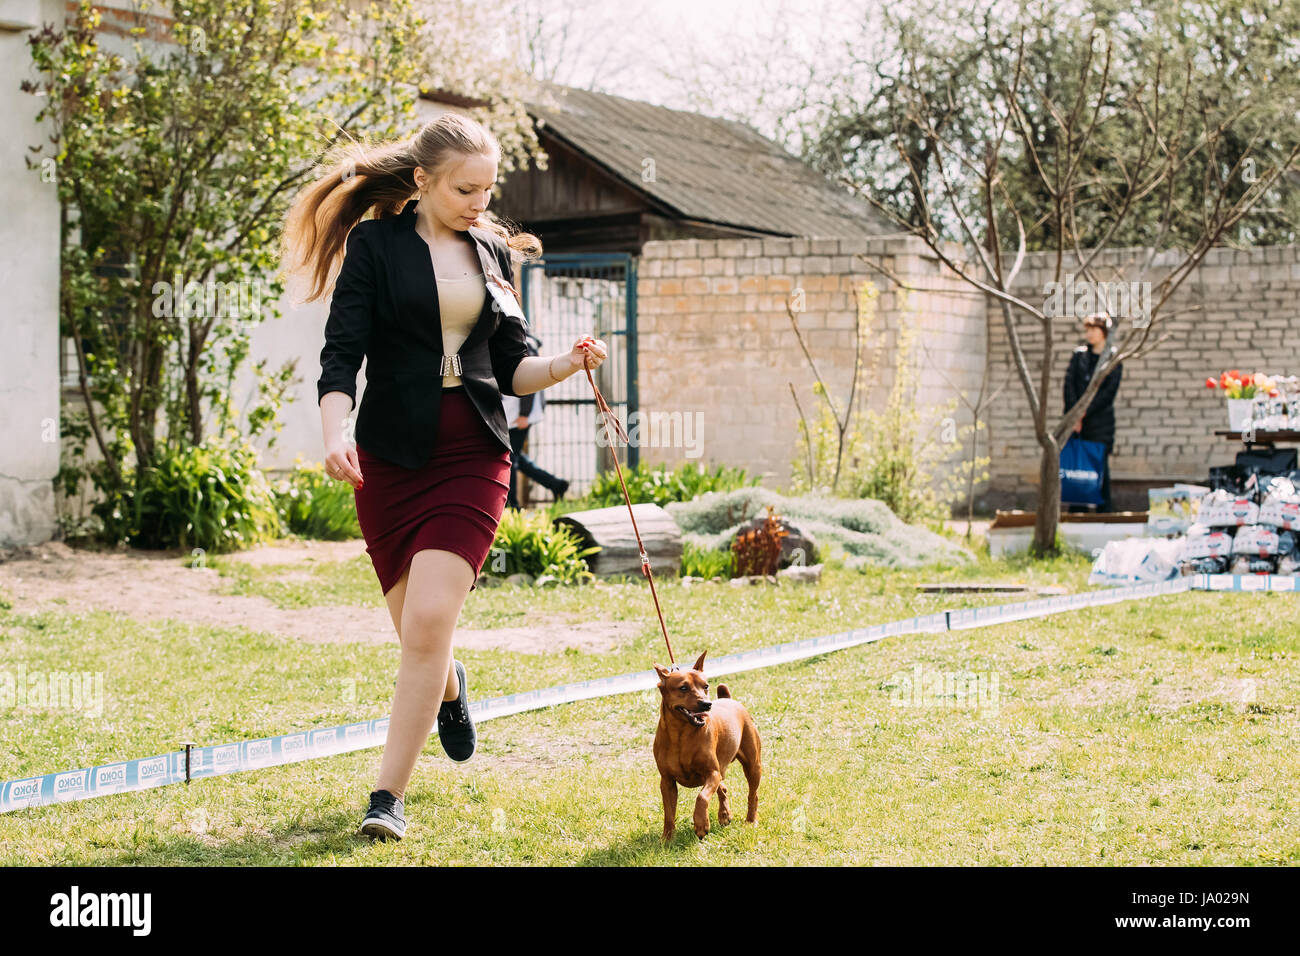 Gomel, Belarus - April 29, 2017: Funny Dog Red Brown Miniature Pinscher Pincher Min Pin Zwergpinscher Running Near Woman At Summer Season. Stock Photo